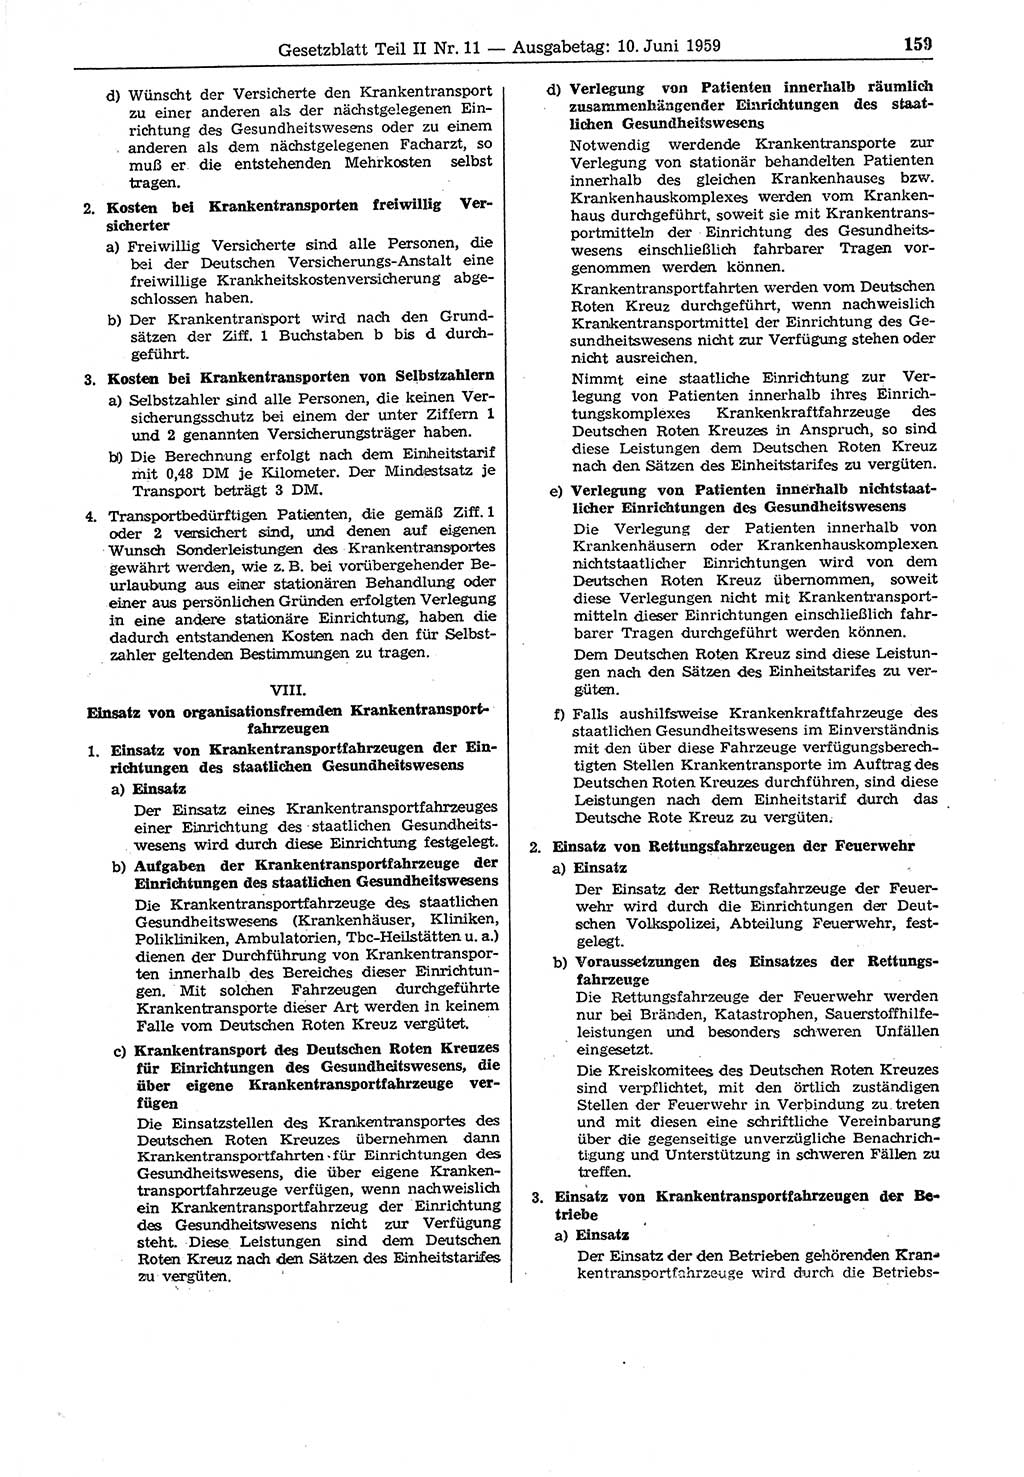 Gesetzblatt (GBl.) der Deutschen Demokratischen Republik (DDR) Teil ⅠⅠ 1959, Seite 159 (GBl. DDR ⅠⅠ 1959, S. 159)